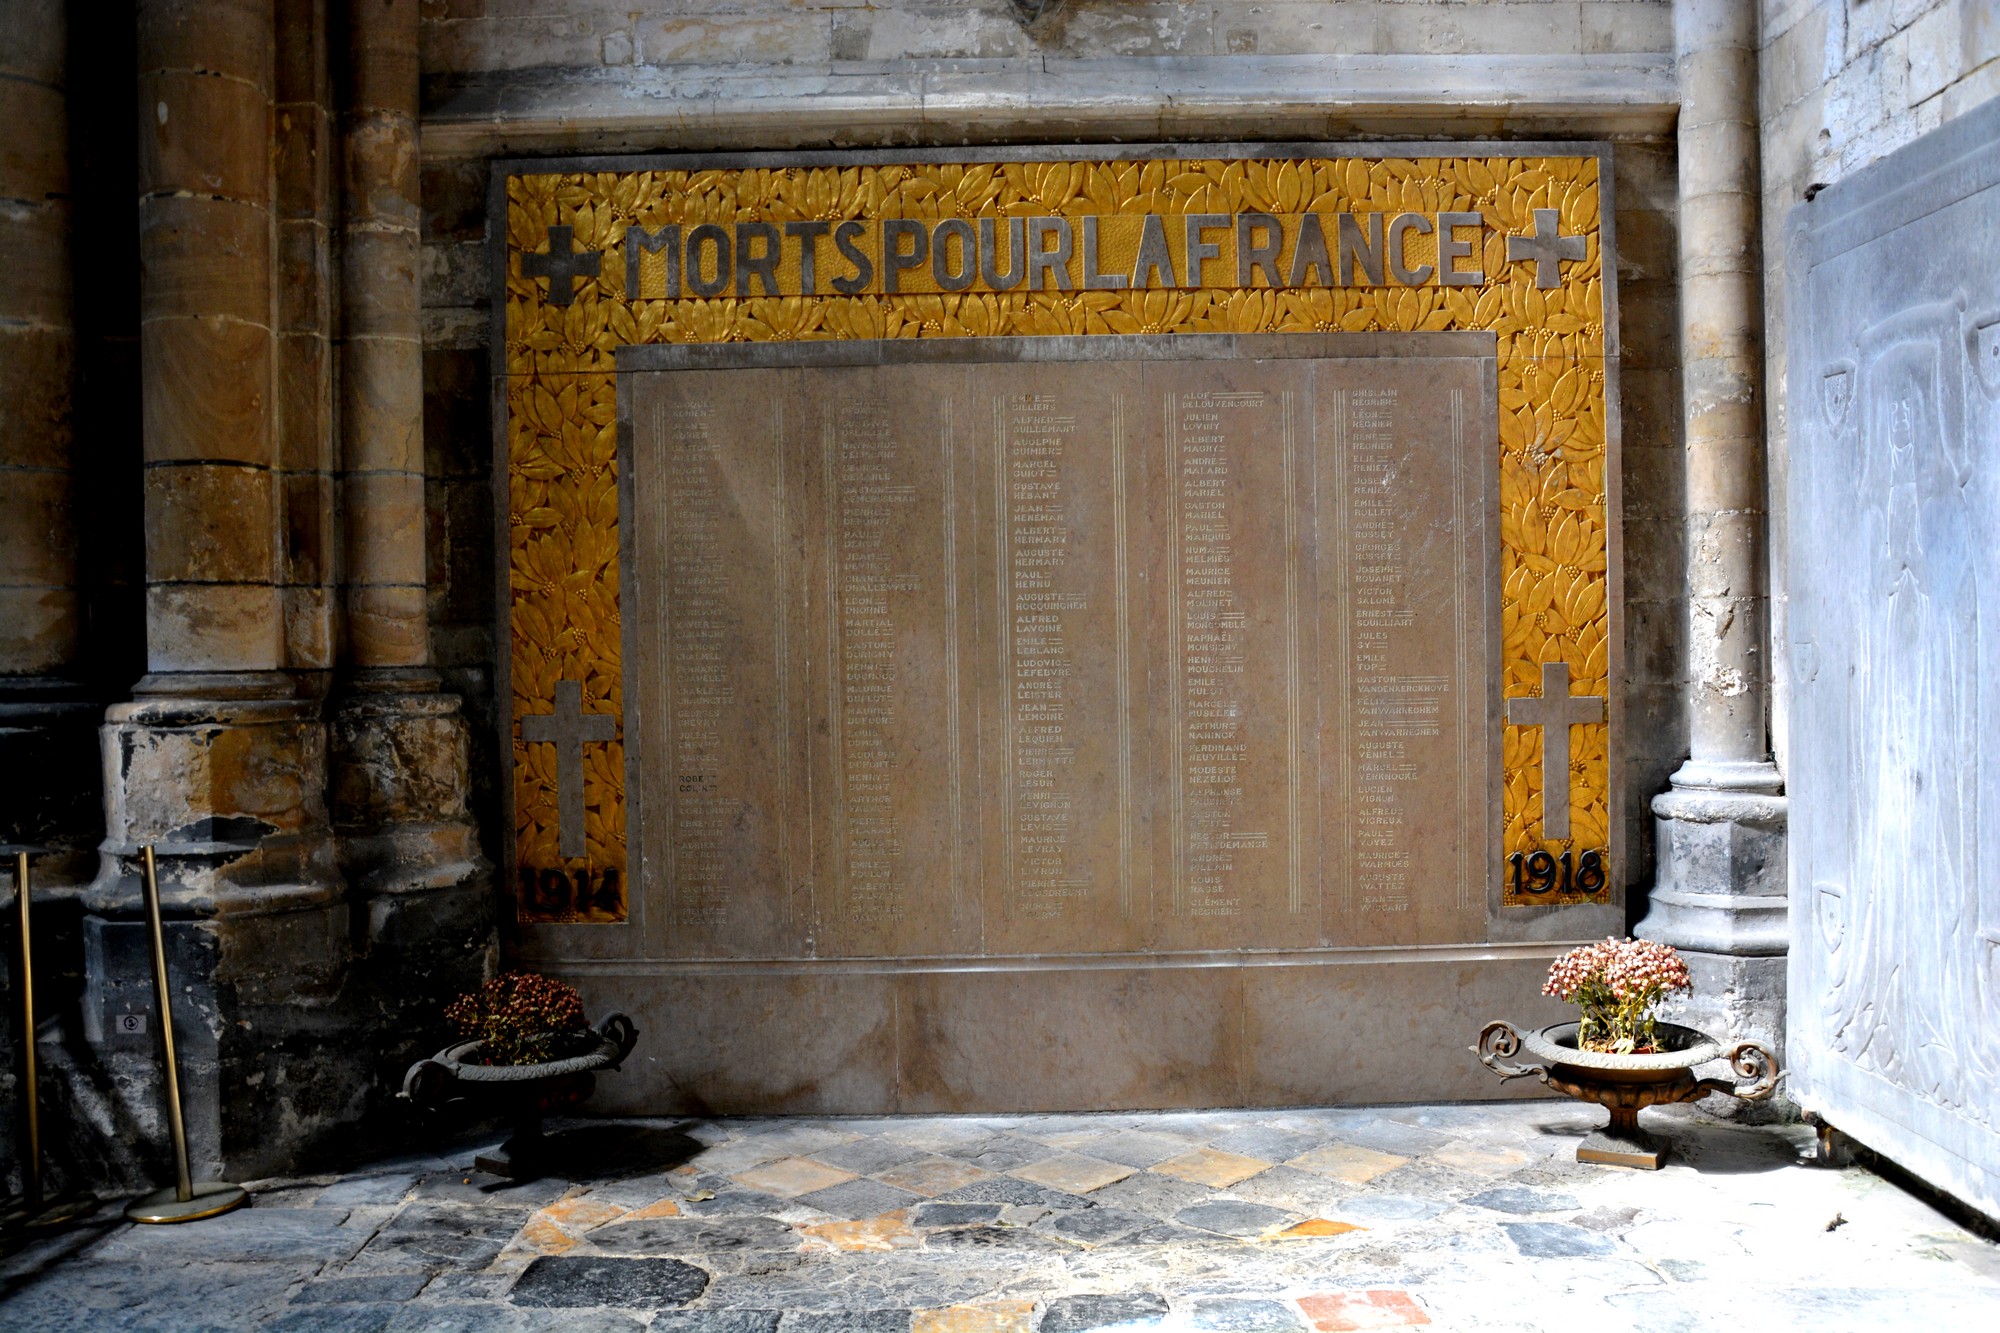 Cathédrale de Saint-Omer|transept nord est monument aux morts des grandes guerres